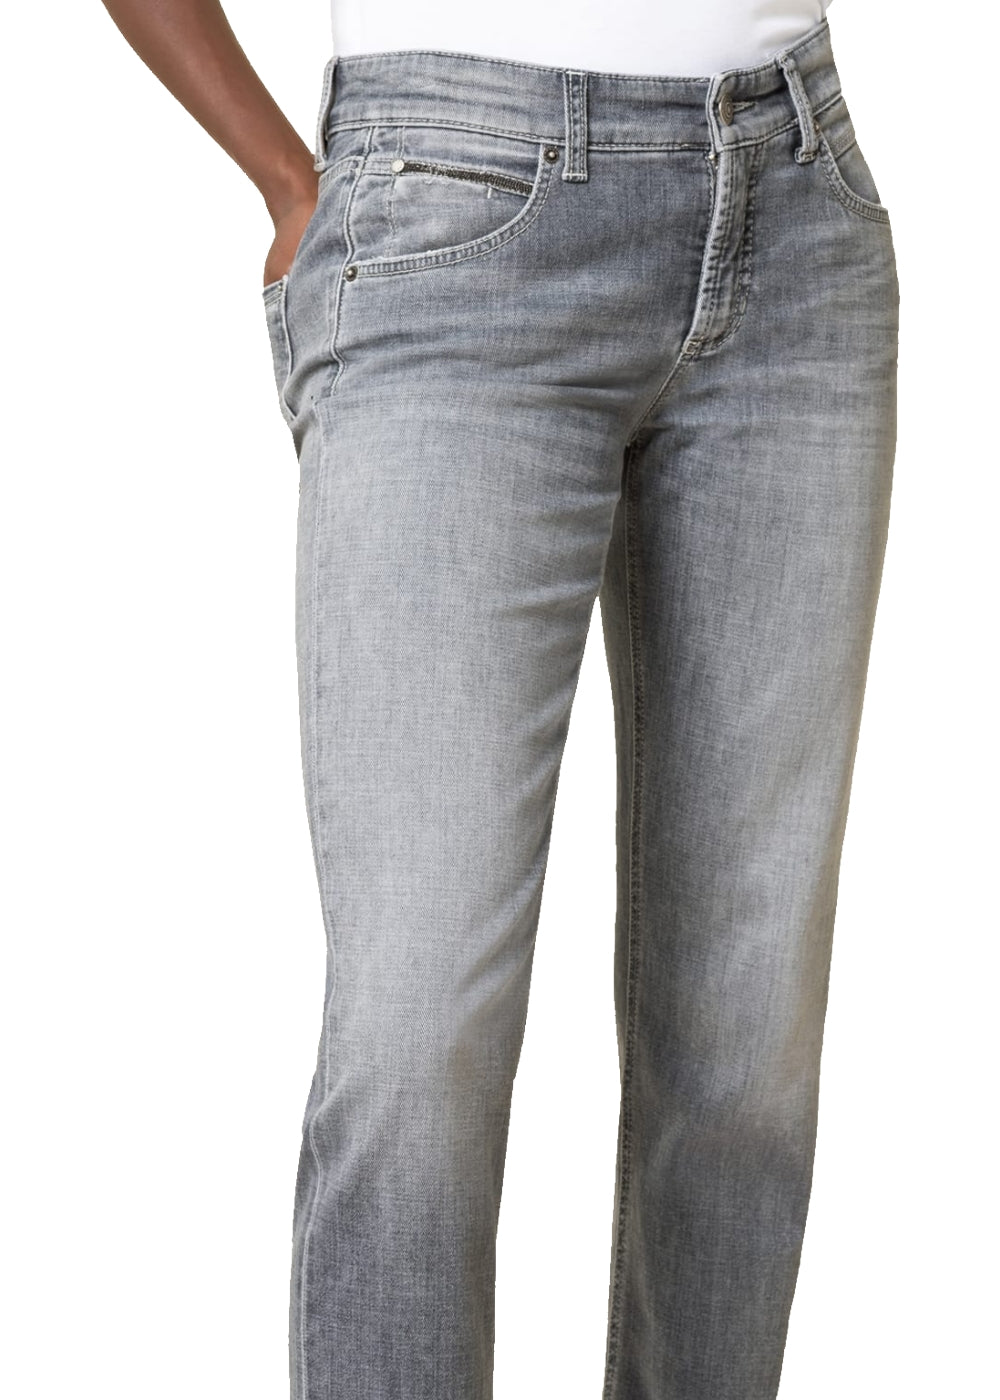 Cambio Jeans Pina short in hellgrau. Schmal geschnittene 5-Pocket Hose mit normaler Taille von Cambio online kaufen. Slim fit Jeans mit modischer 7/8 Länge und moderaten destroyed Elementen aus der neuen Cambio Kollektion.